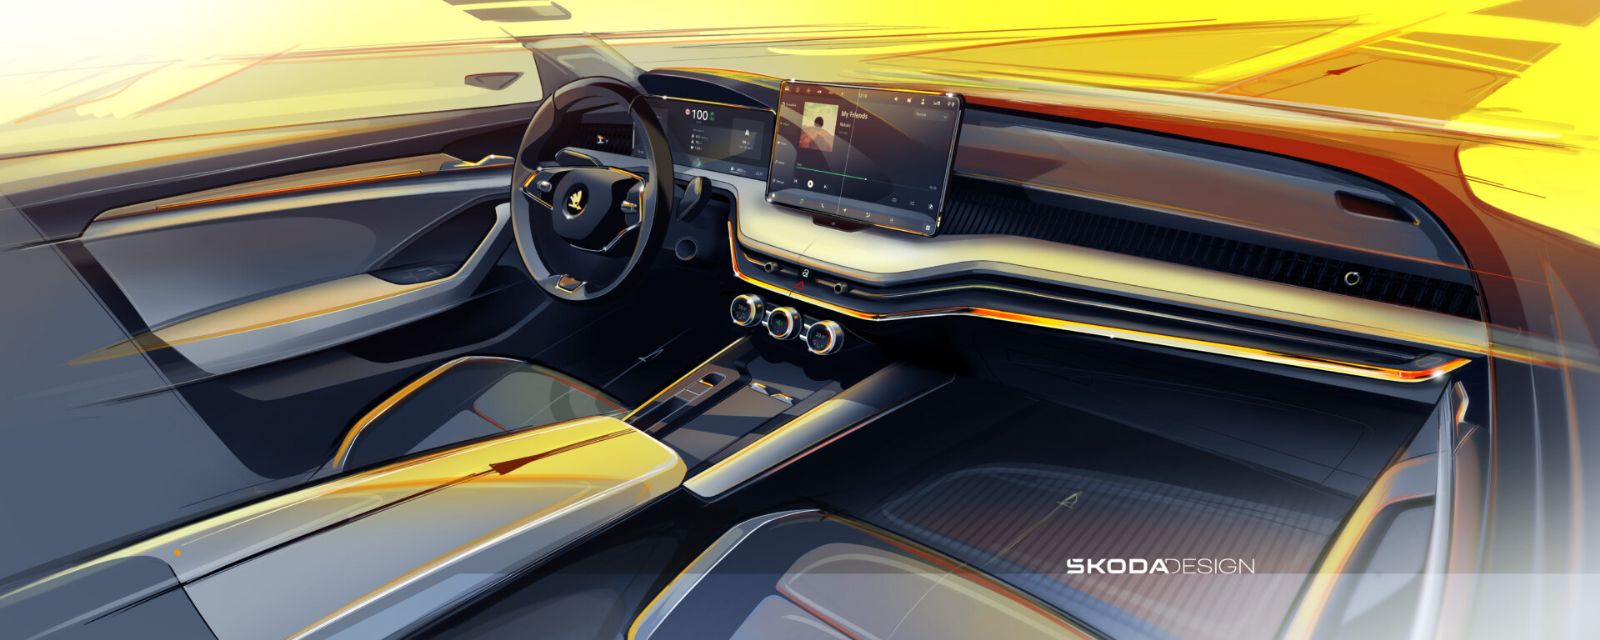 Škoda Auto zveřejňuje video upoutávku na čtvrtou generaci modelu Superb. Předchozí verze modelu Superb najdete skladem v Auto CB v Plzni!